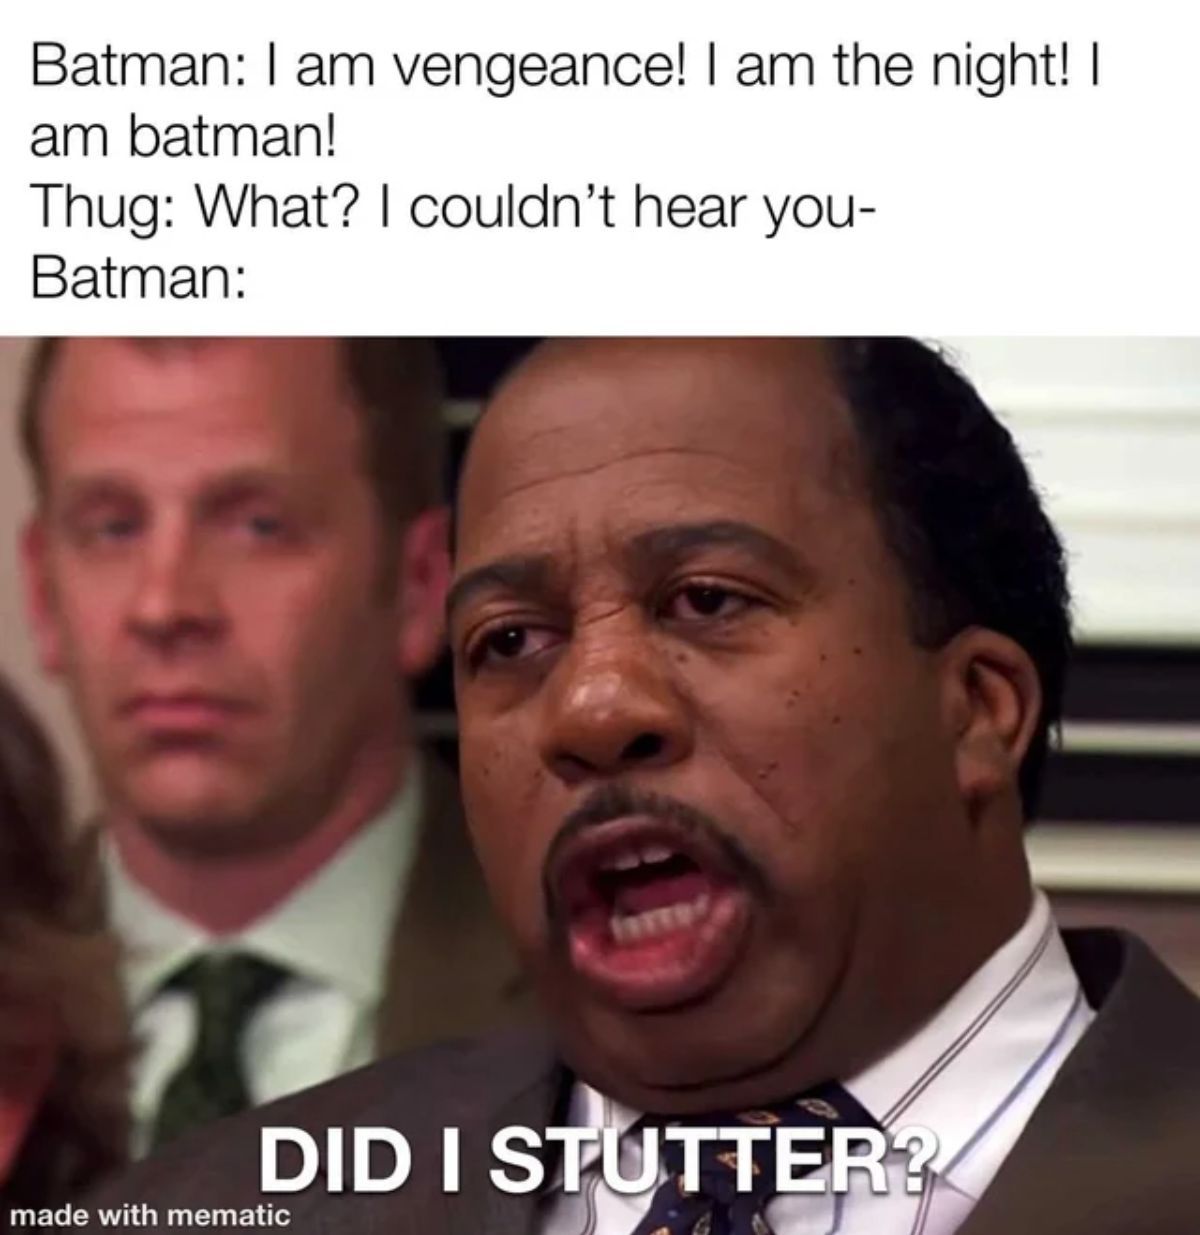 batman-quote-meme-did-I-stutter